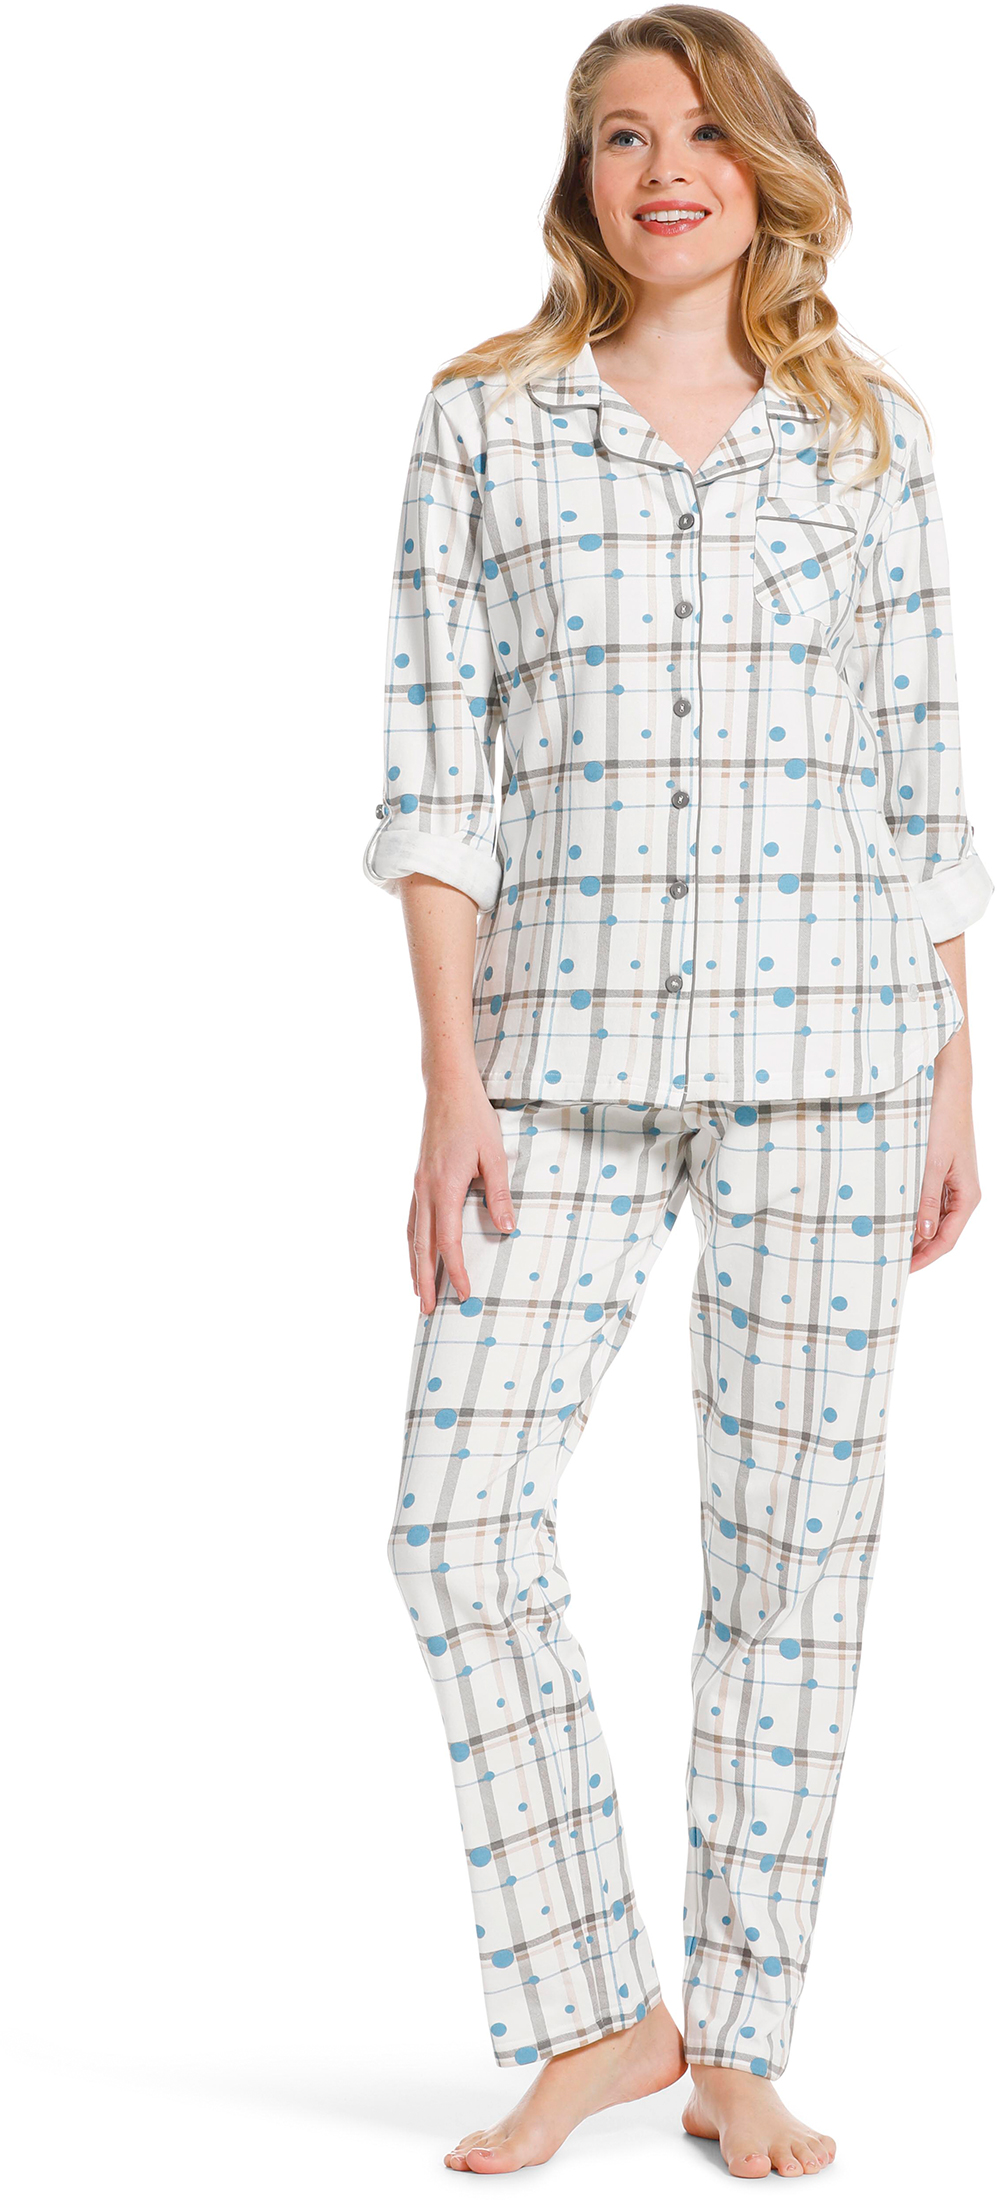 Pastunette dames doorknoop pyjama 20222-142-6-42